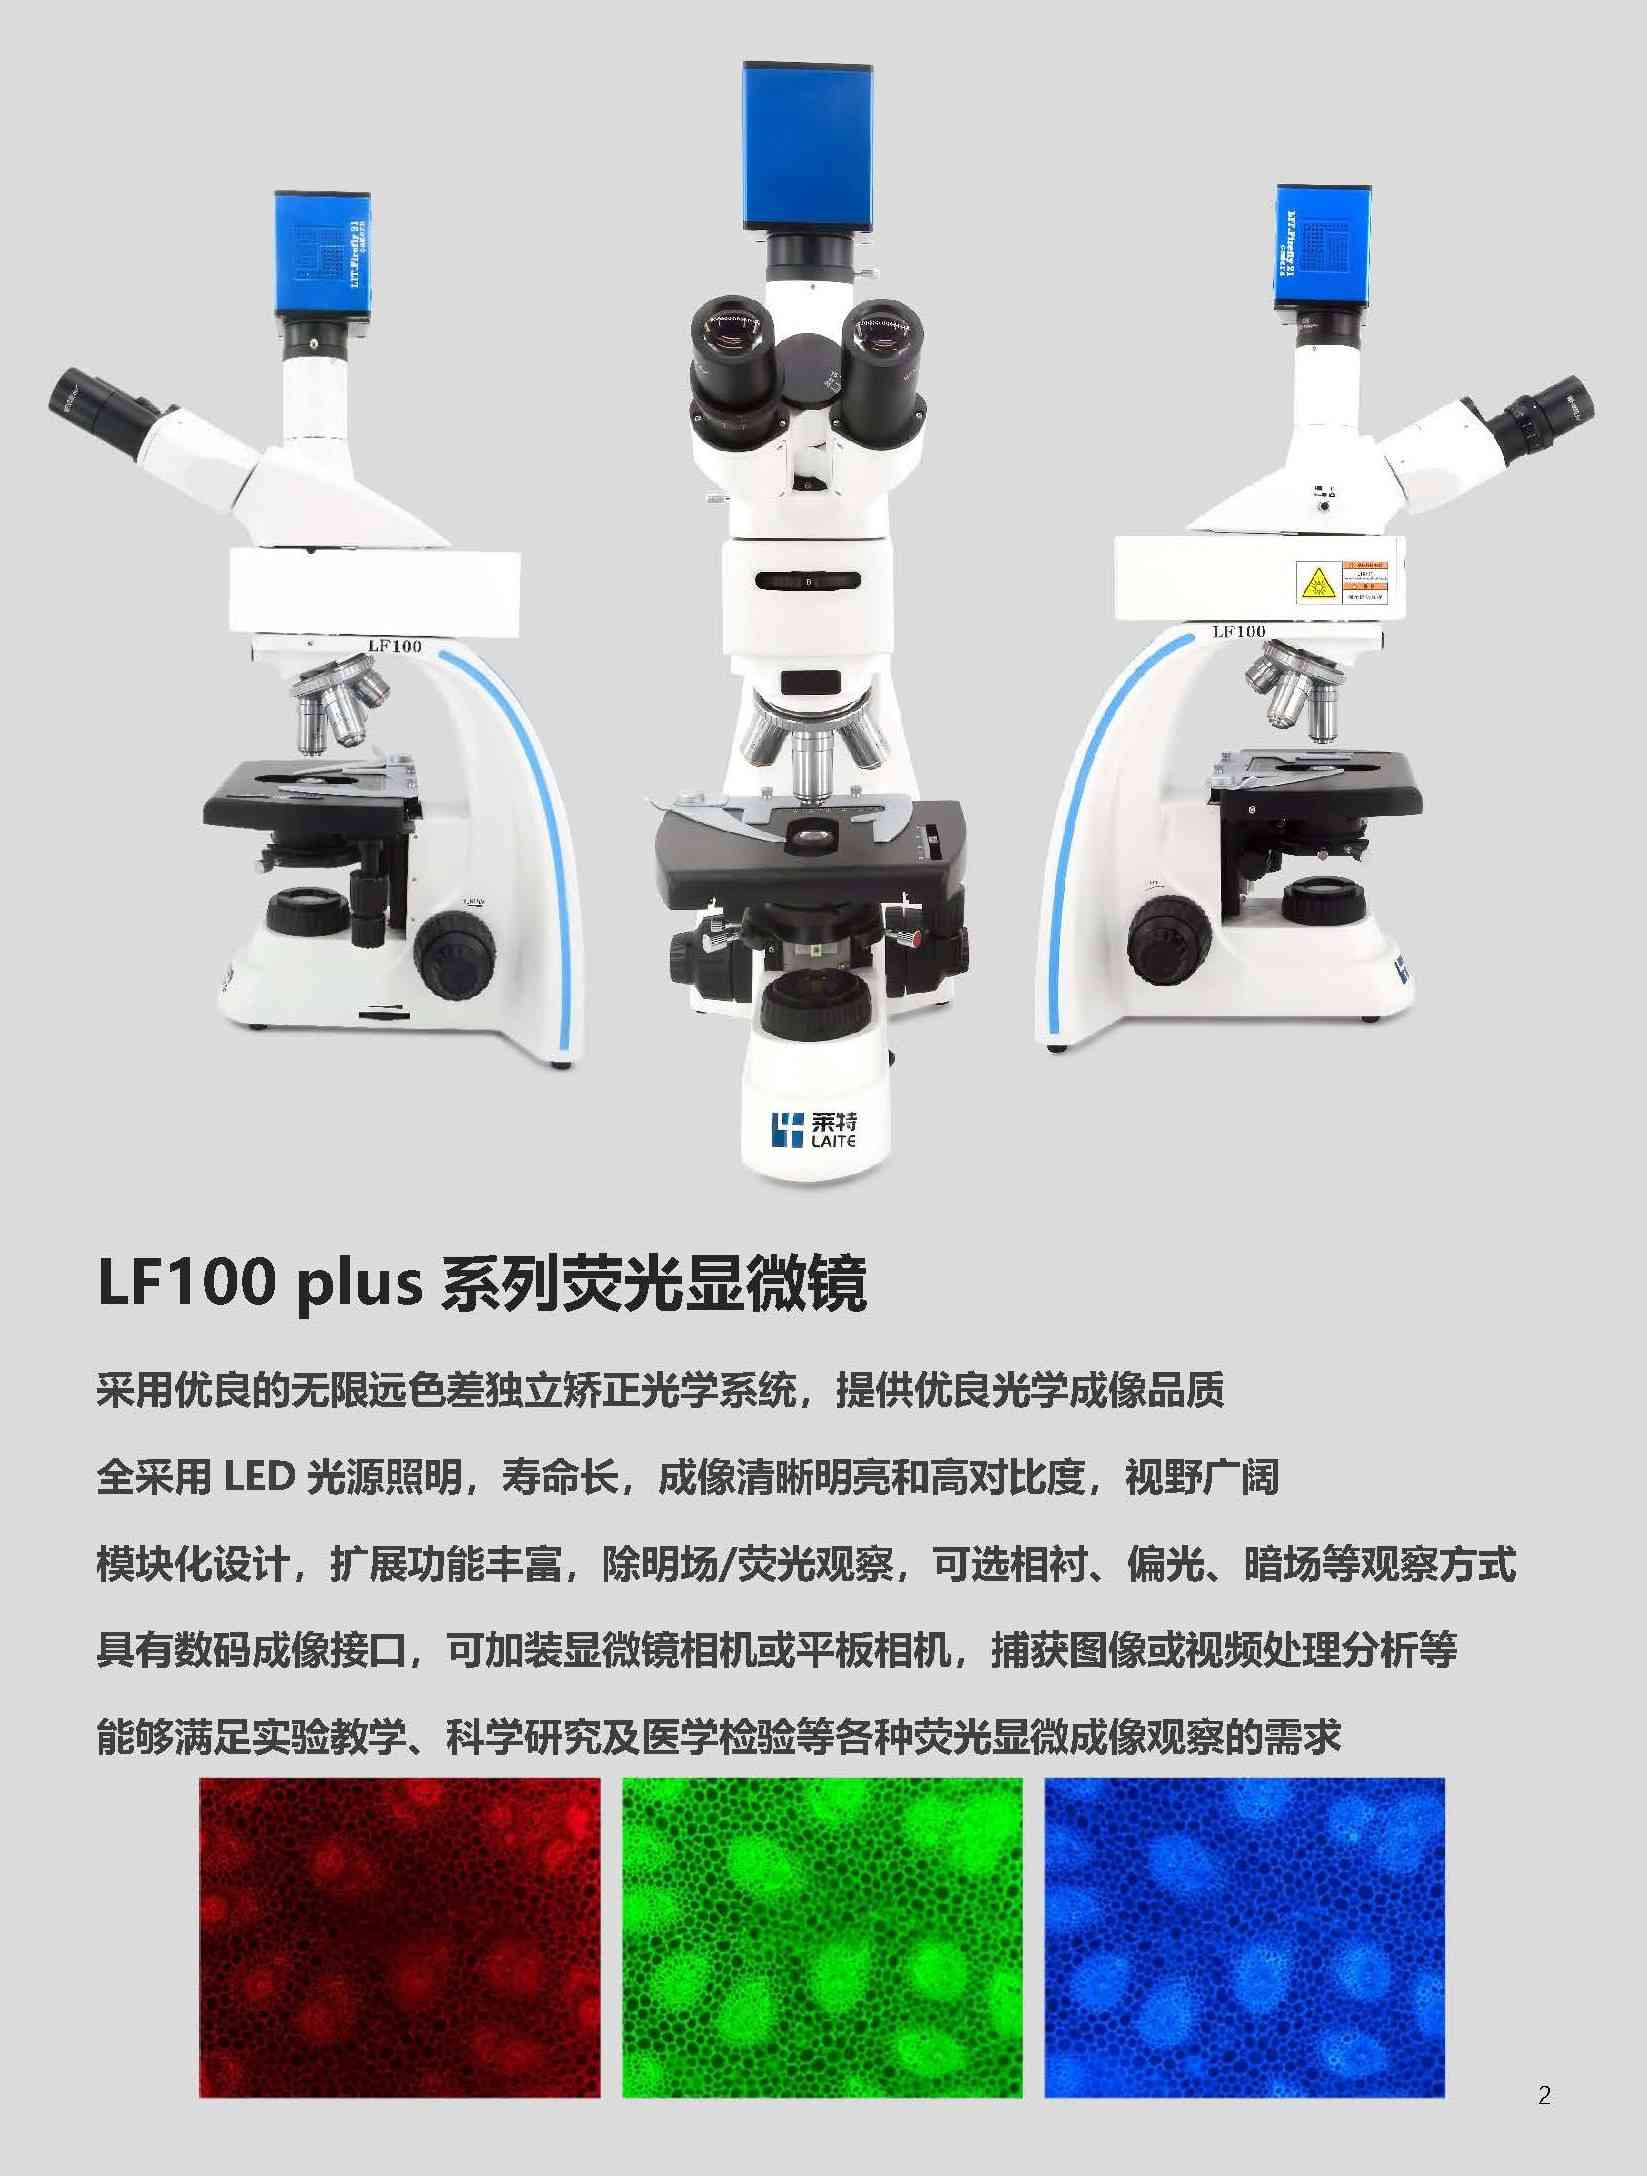 荧光显微镜Laite莱特LF100